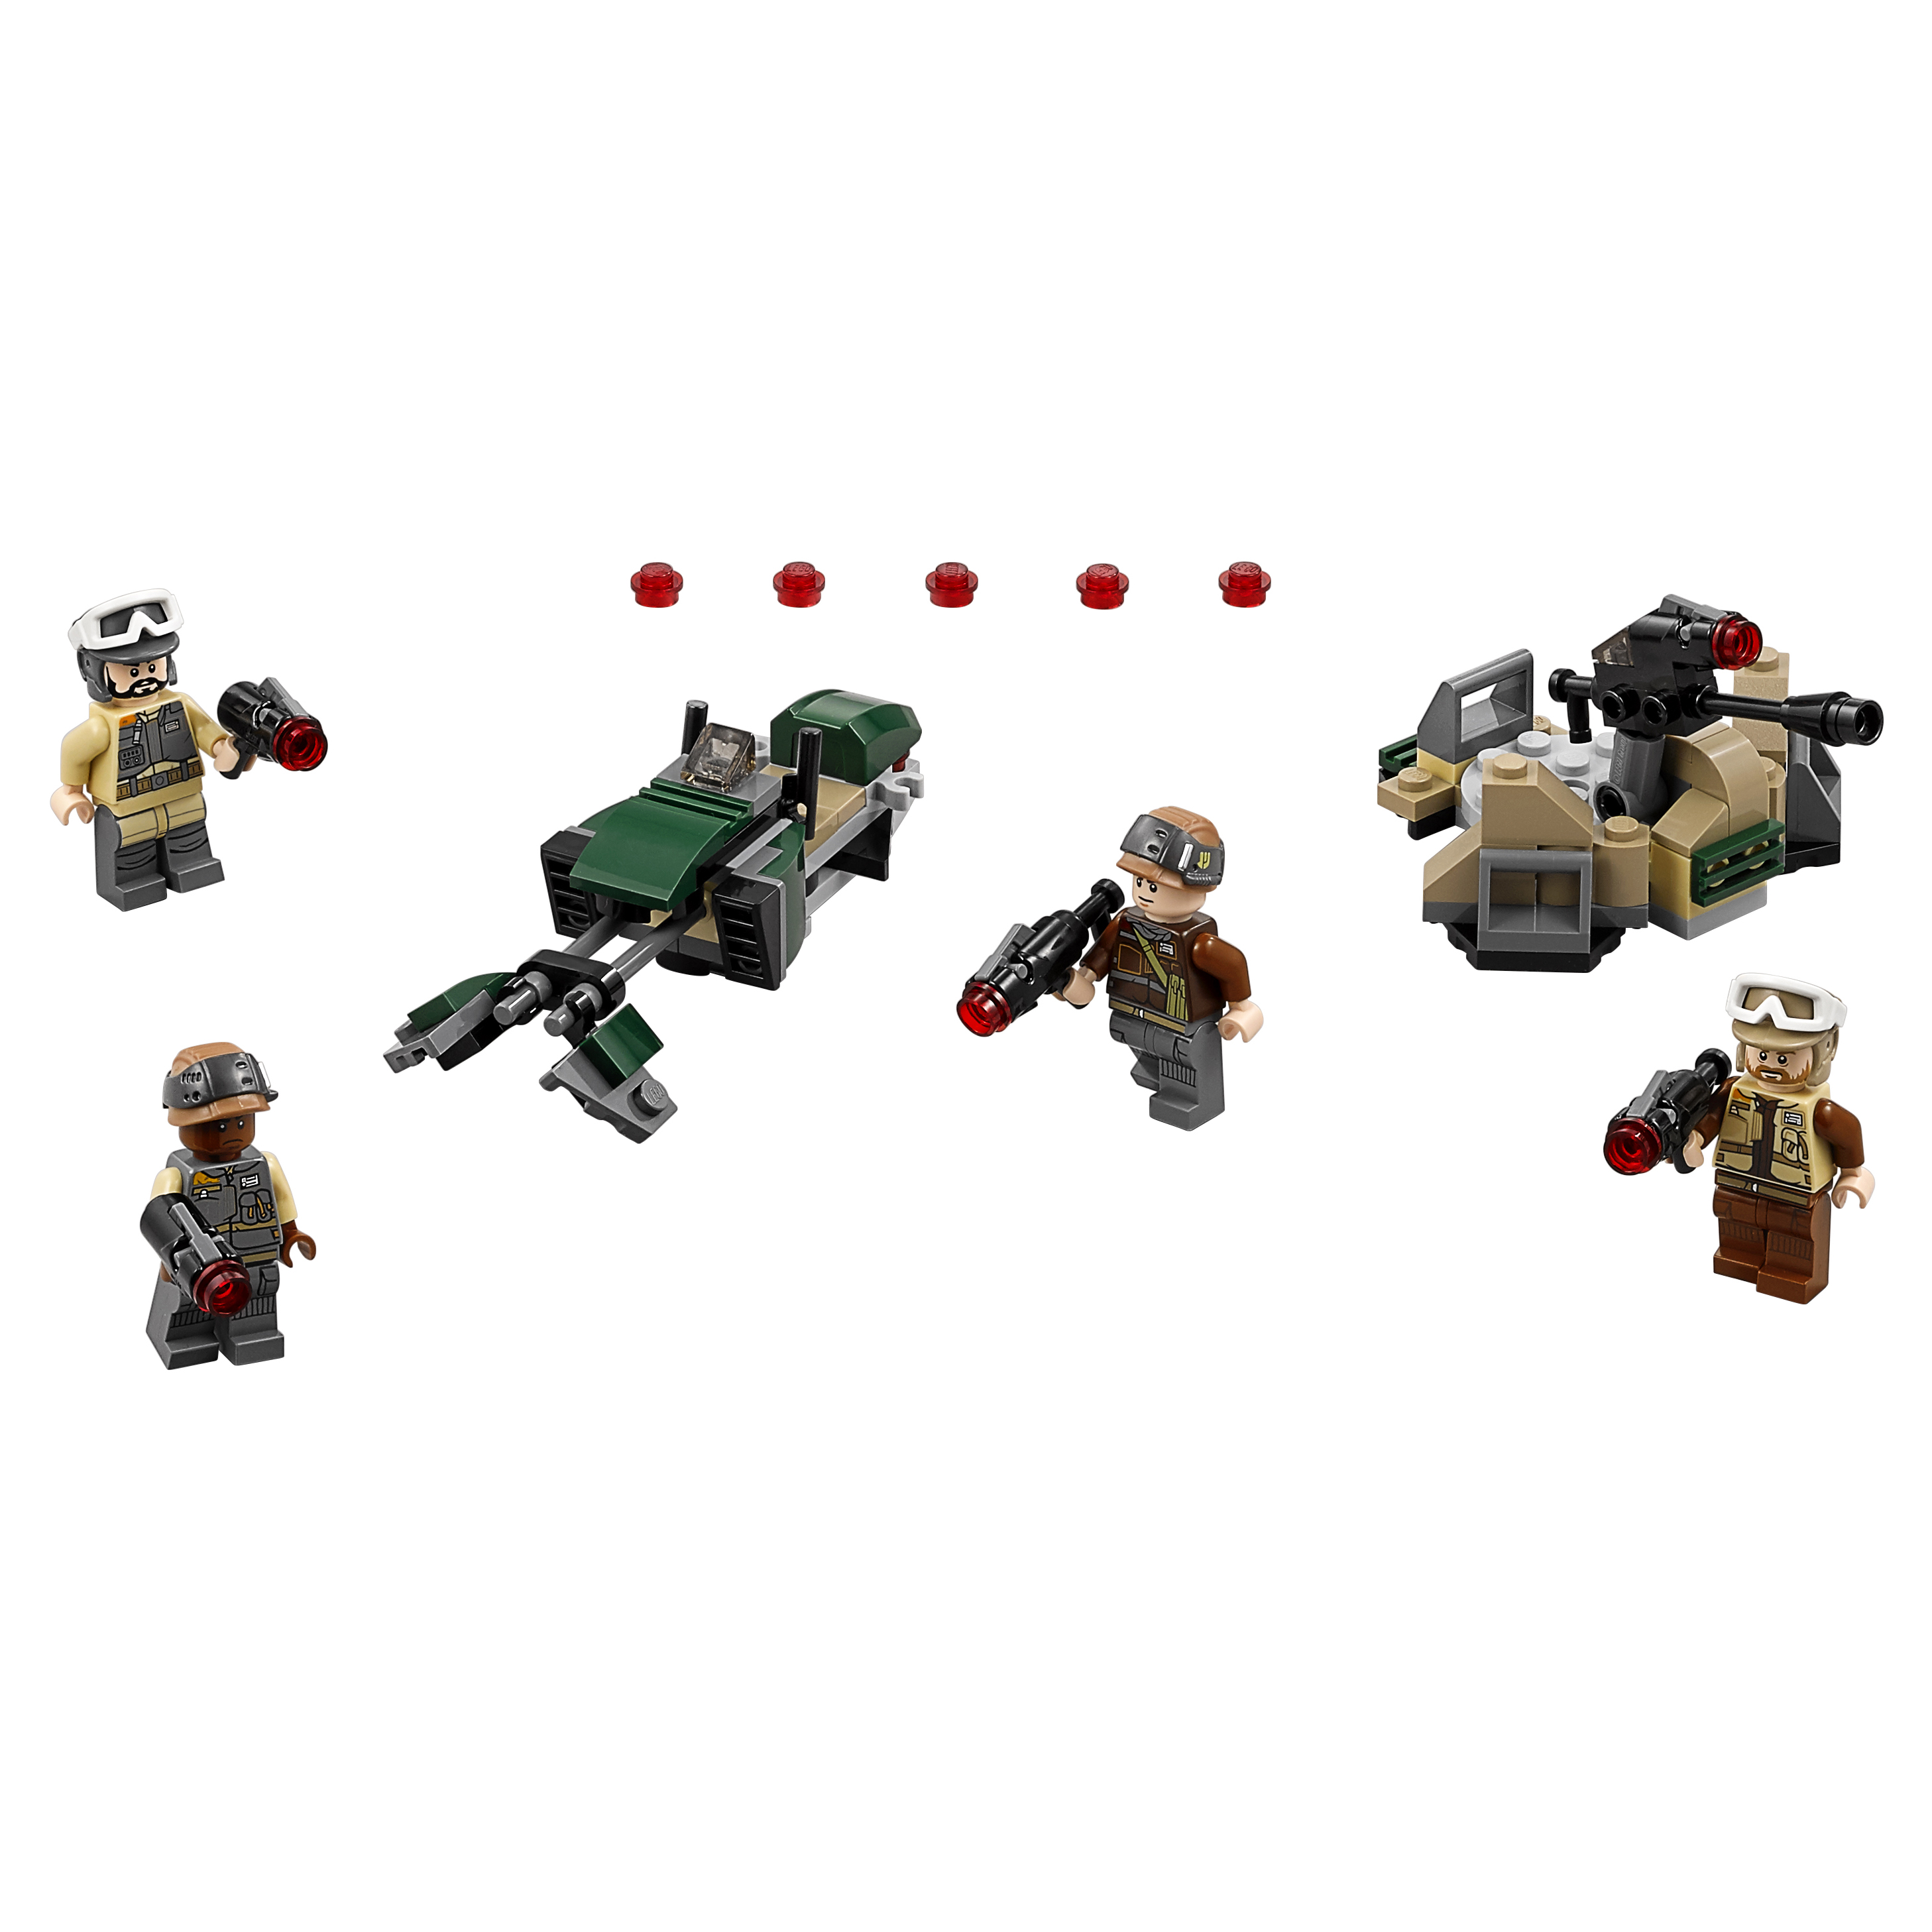 Конструктор LEGO Star Wars Боевой набор Повстанцев (75164) конструктор lego star wars кантина мос айсли mos eisley cantina 75052